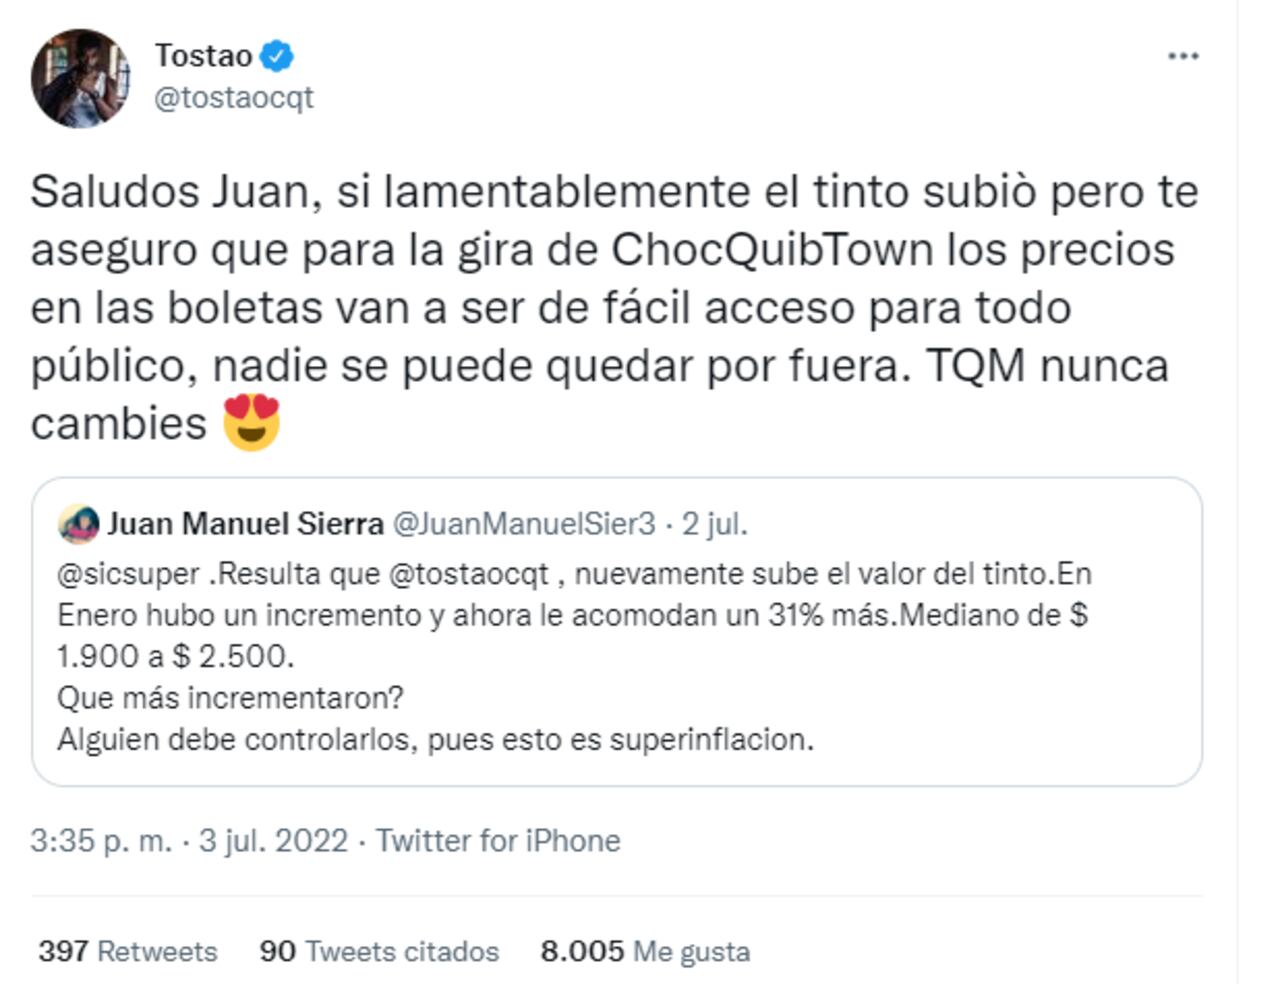 Usuario de Twitter confundió a Tostao, el músico, con Tostao', la tienda, y lo reportó ante la SIC.